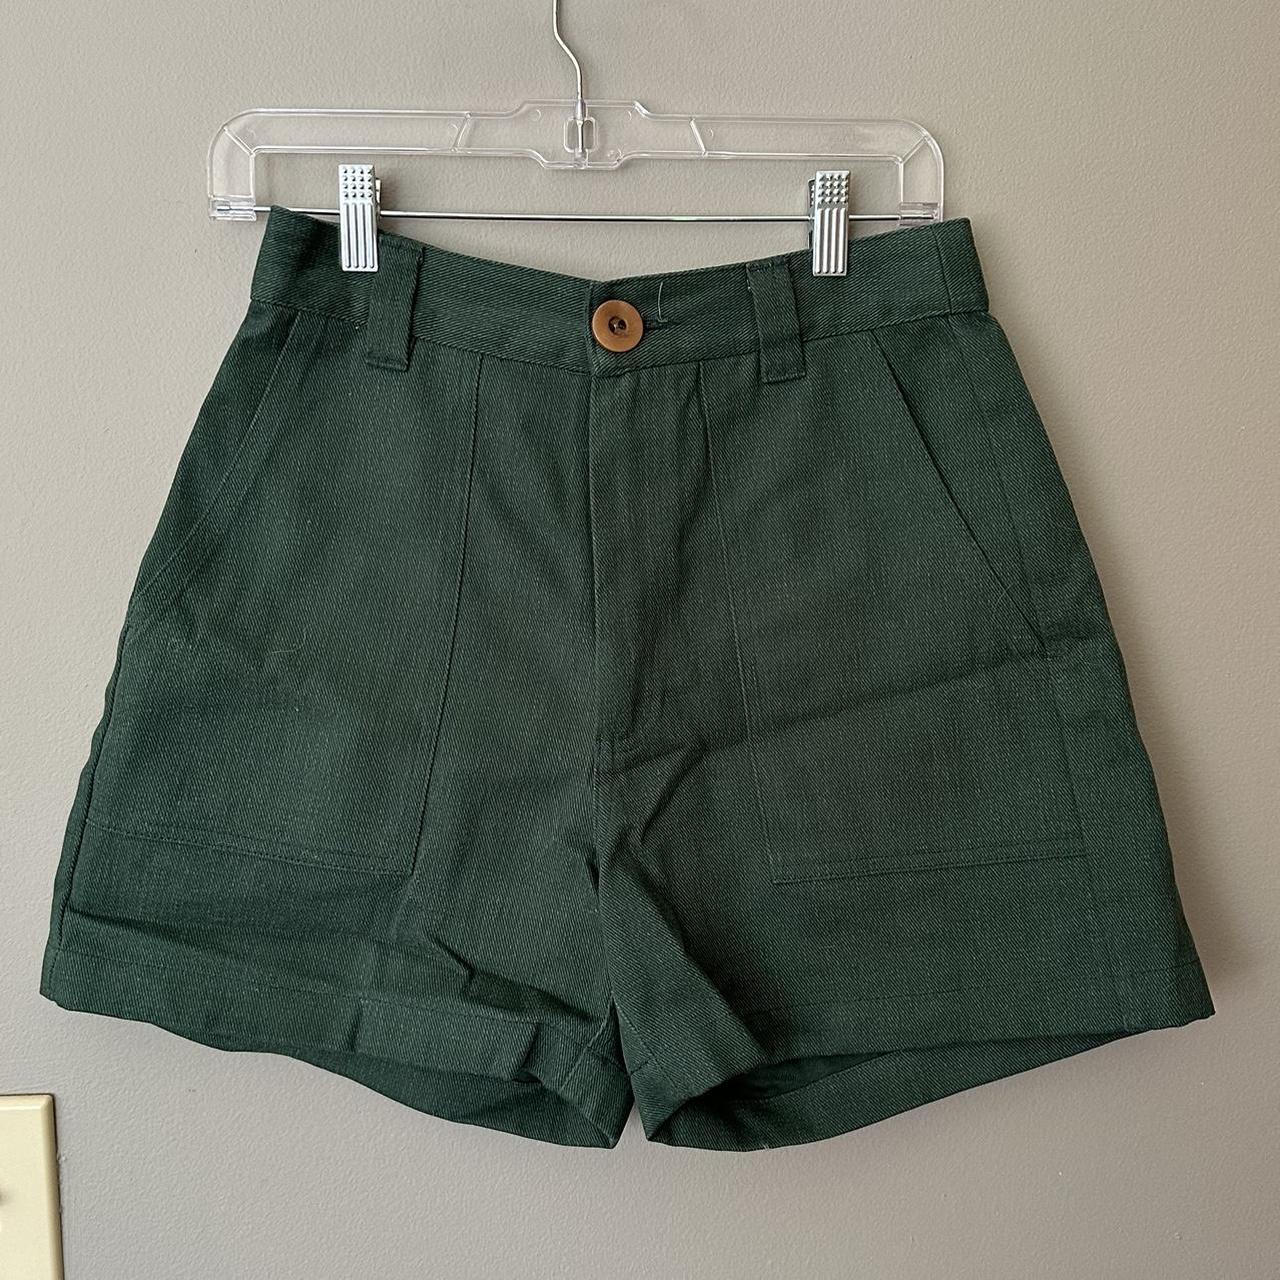 Beaton Women's Green Shorts